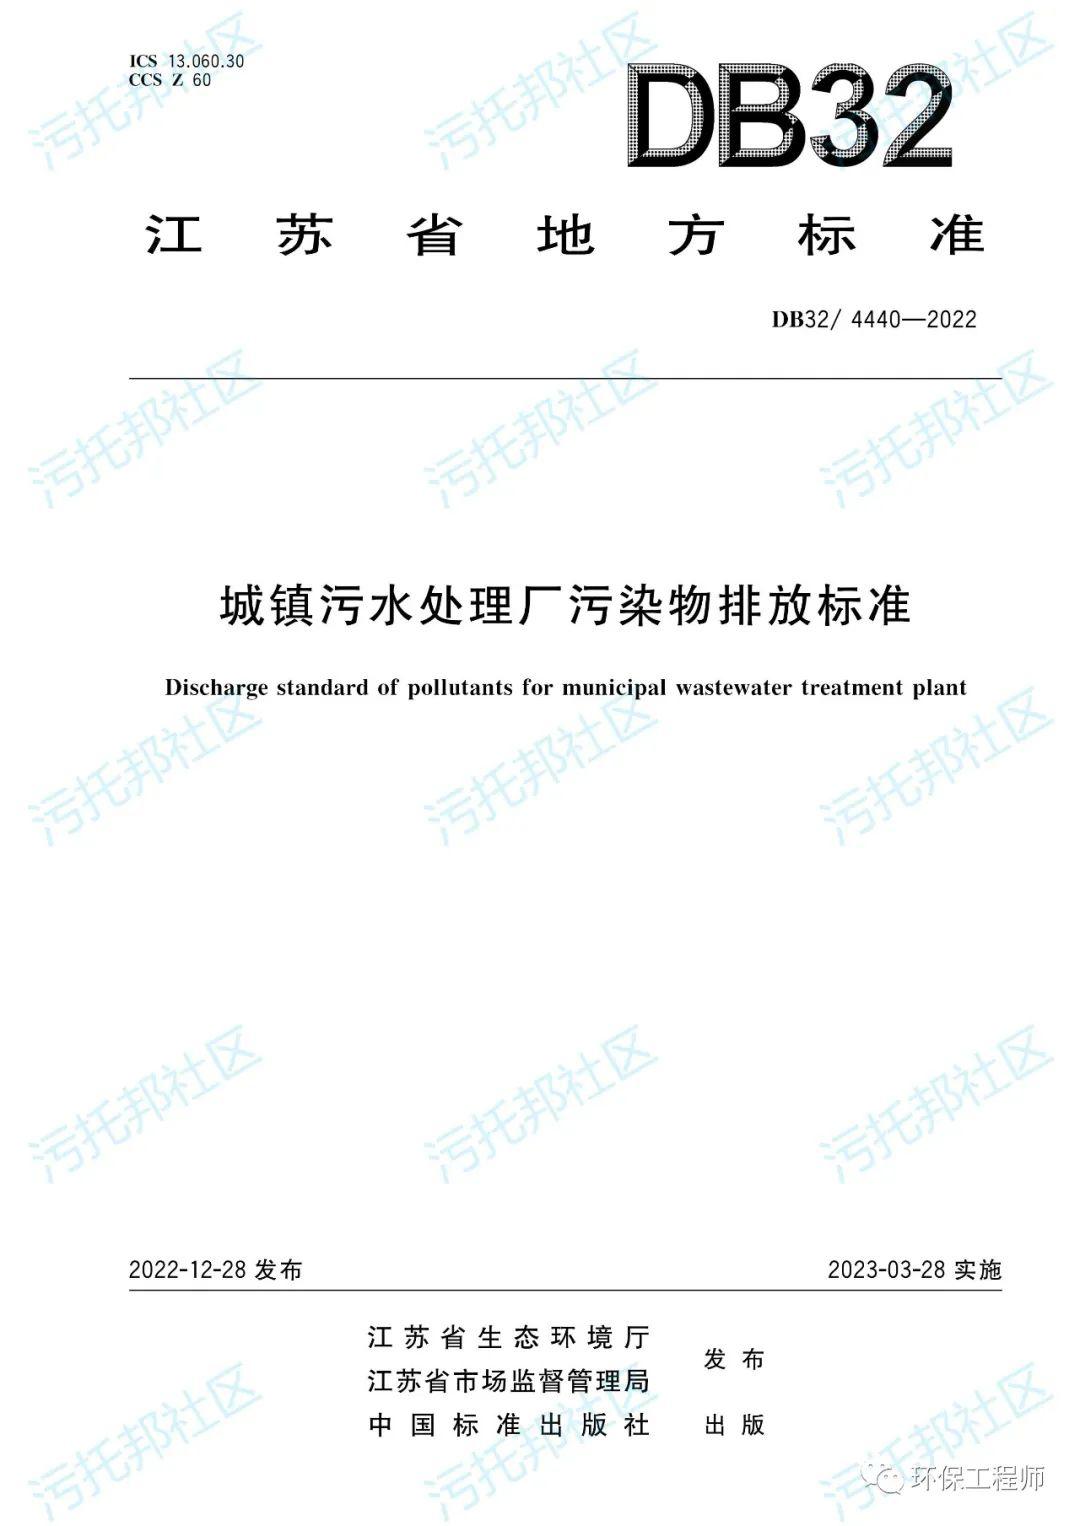 准Ⅳ类标准！江苏省《城镇污水处理厂污染物排放标准》正式实施！